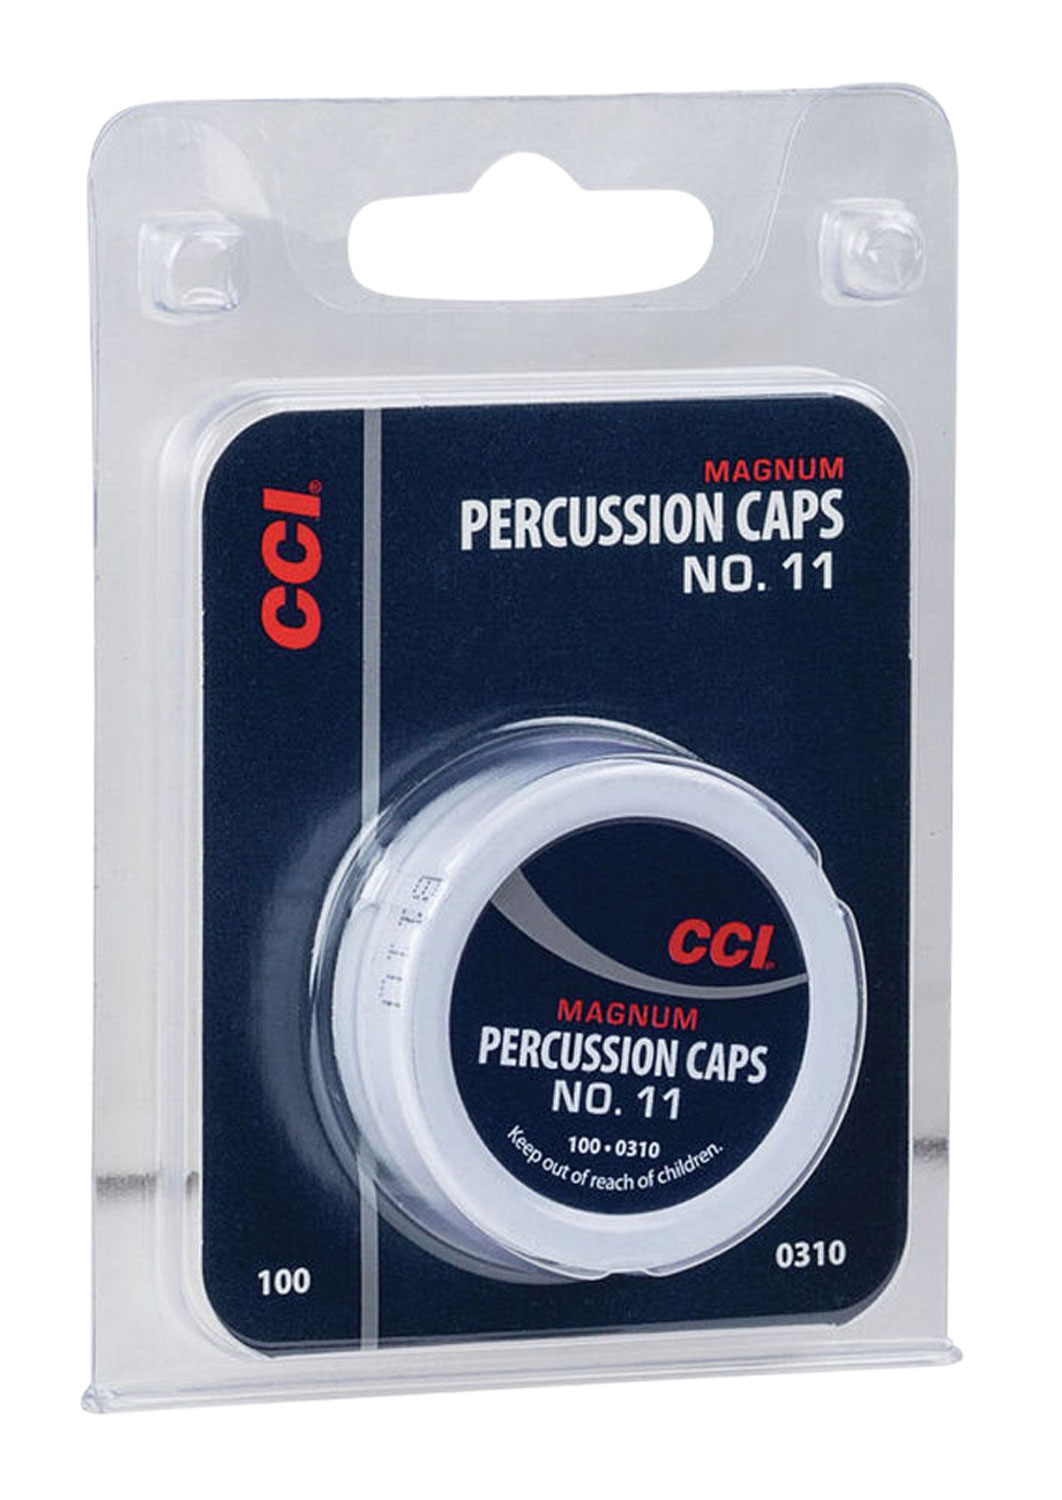 CCI 310 Percussion Cap Magnum Copper #11M 1000 per Box, 5 per Case